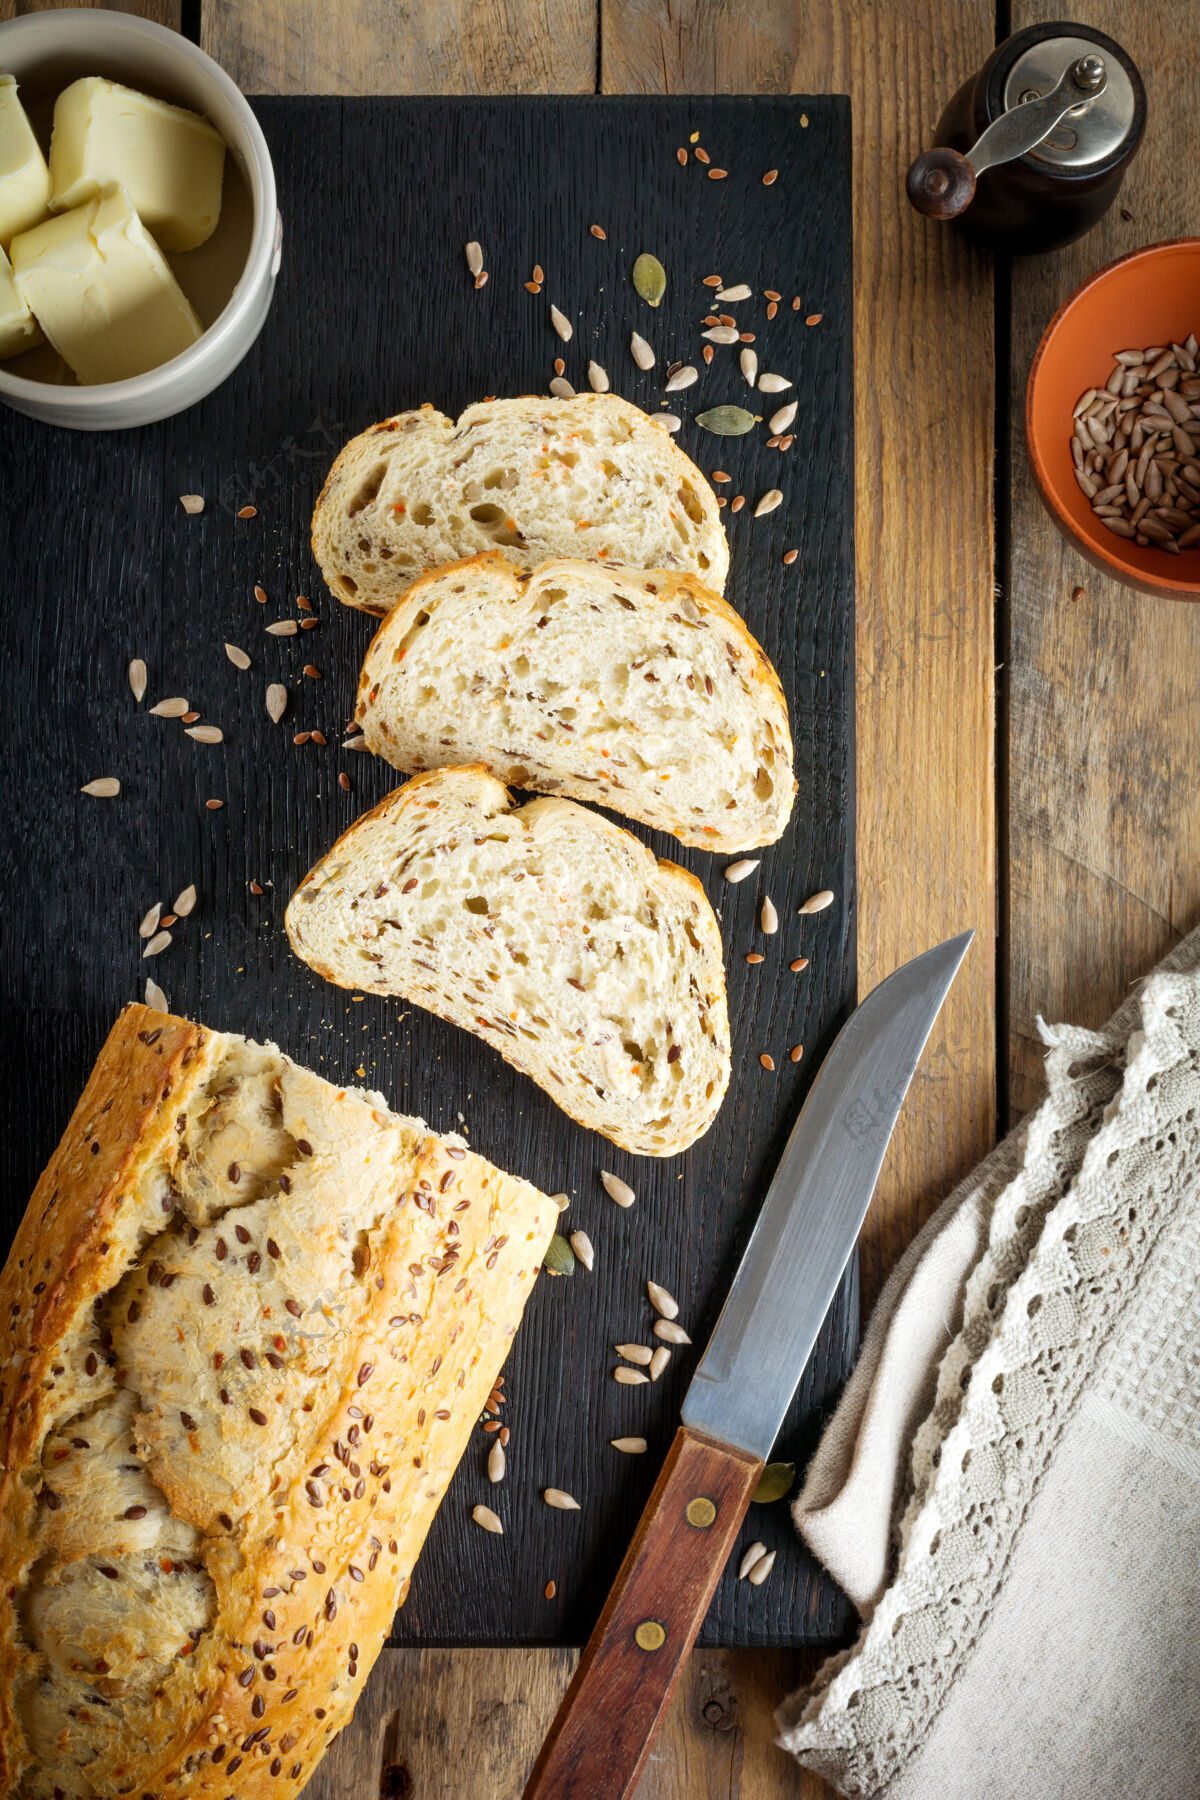 麸皮健康的面包与麸皮 葵花籽 南瓜 亚麻和芝麻在一个古老的木制表面晚餐种子健康